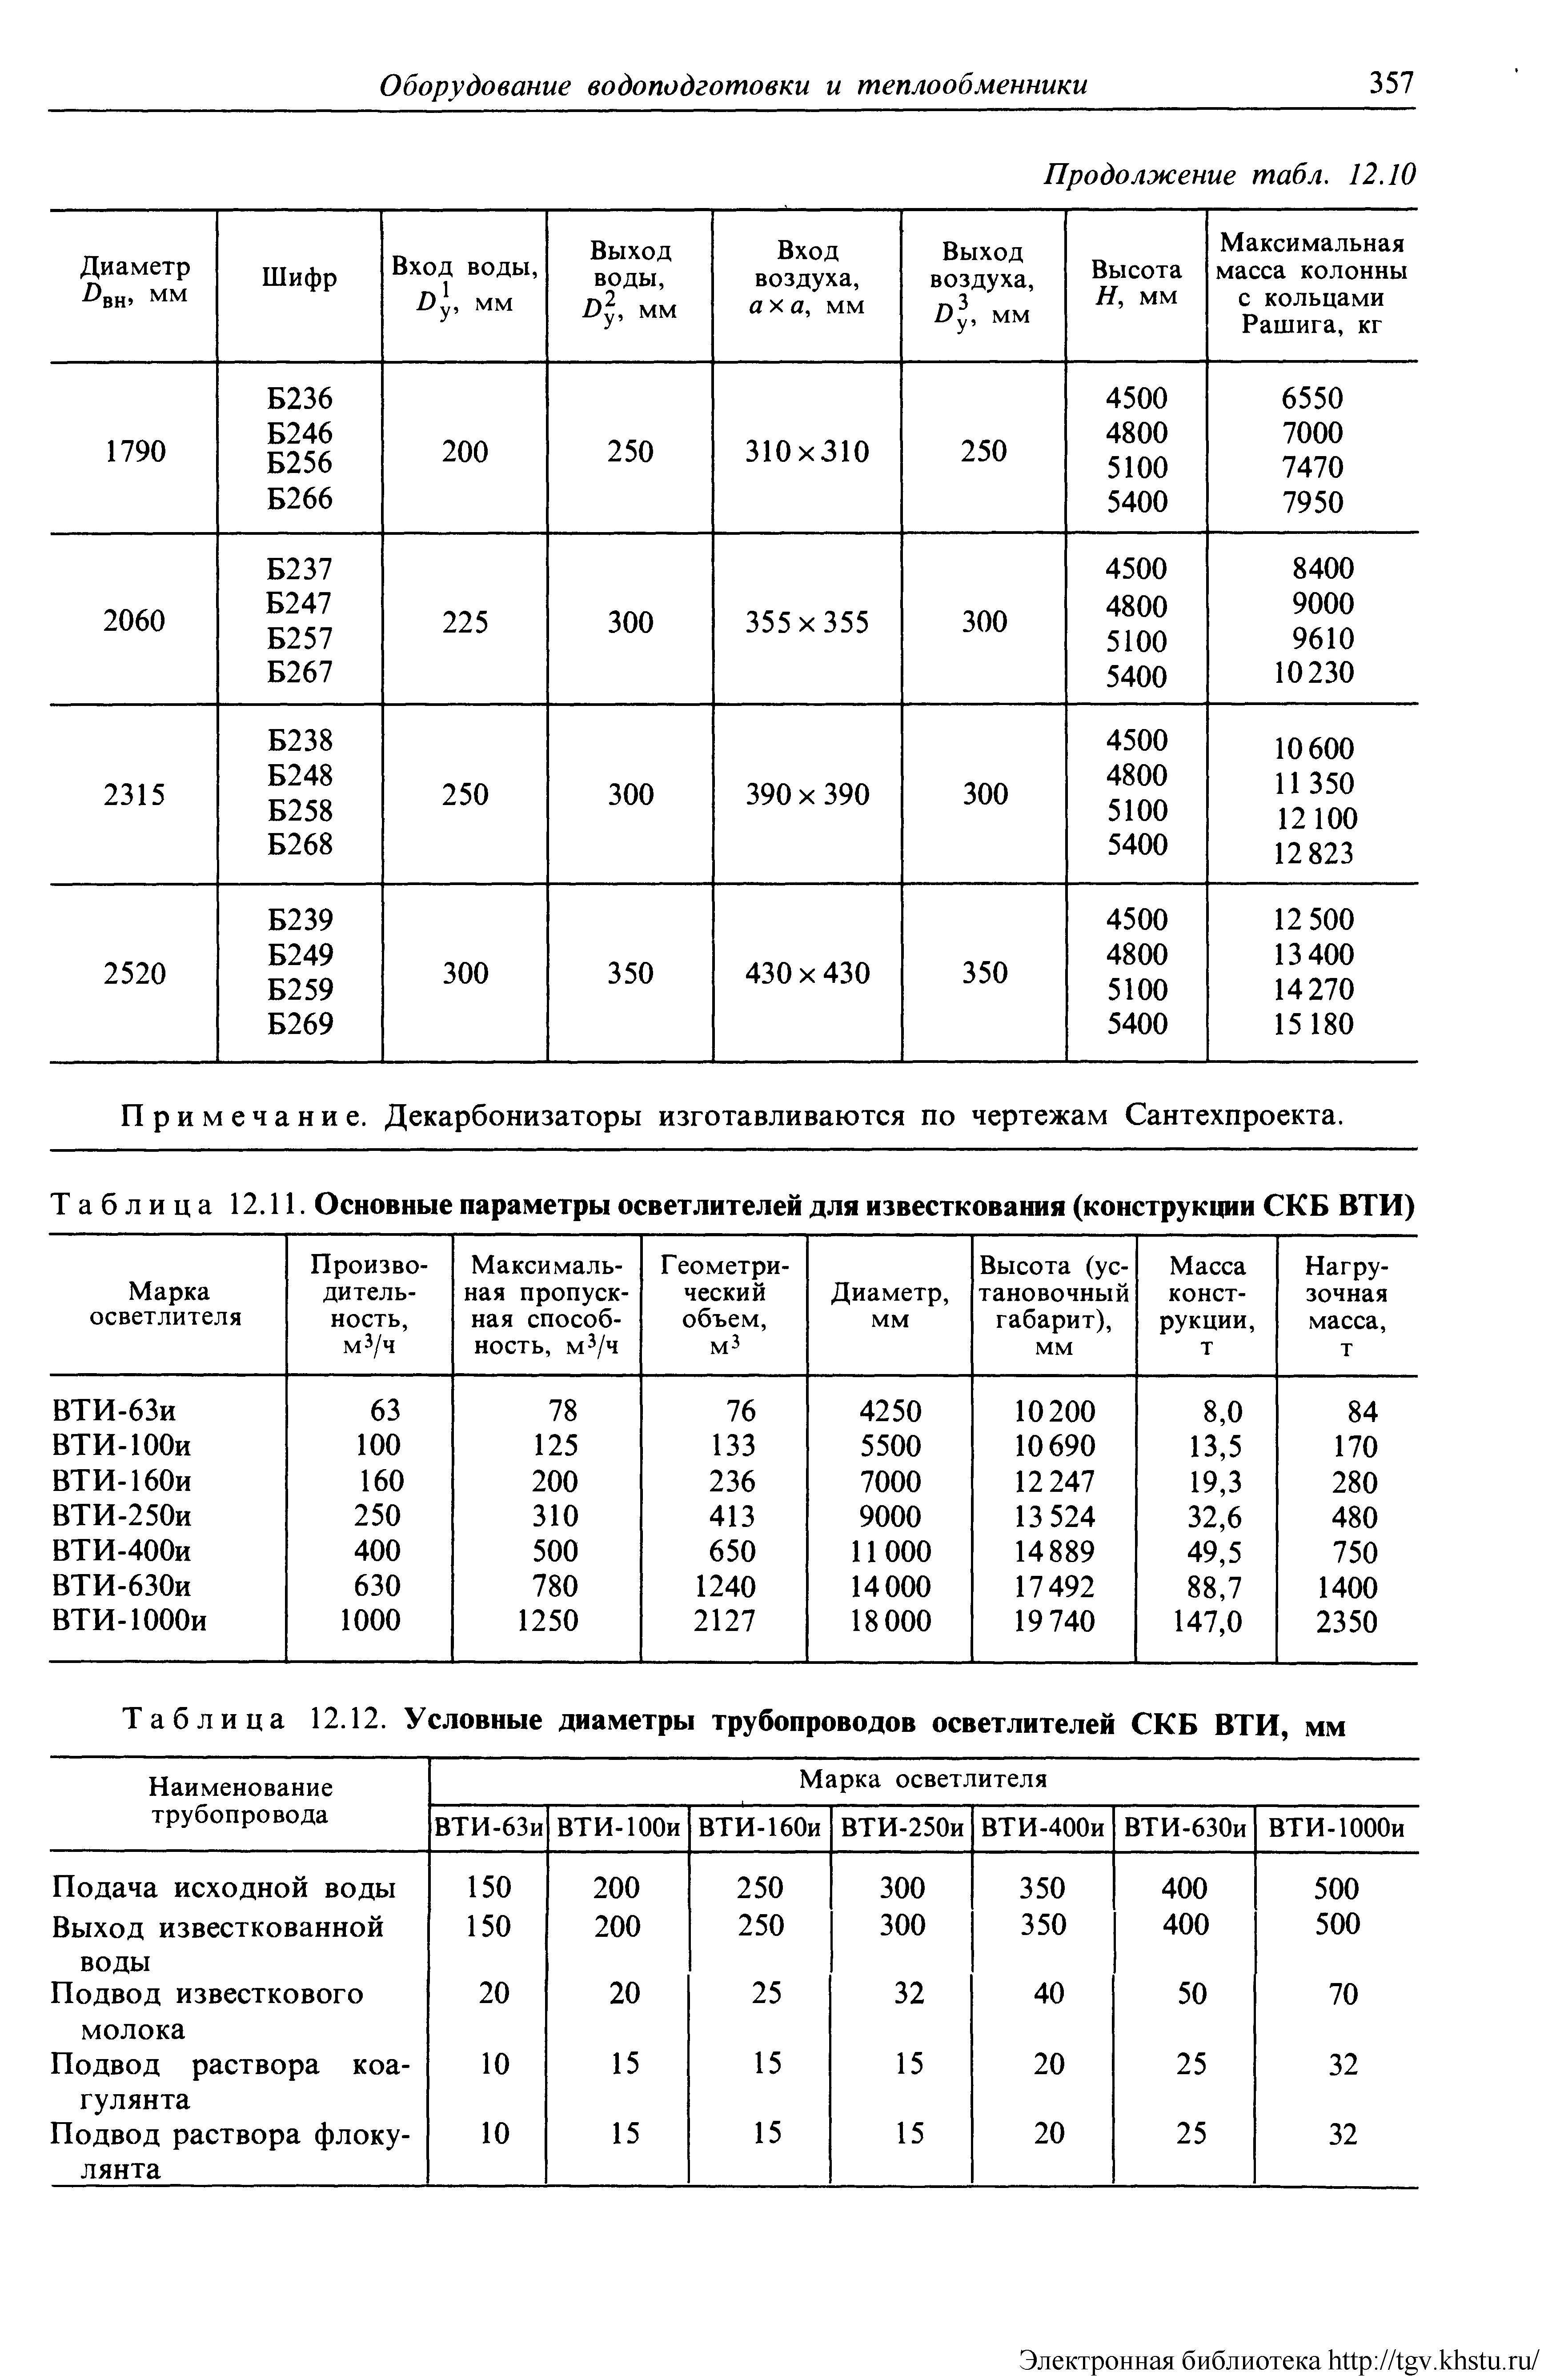 Таблица 12.12. Условные диаметры трубопроводов осветлителей СКБ ВТИ, мм
